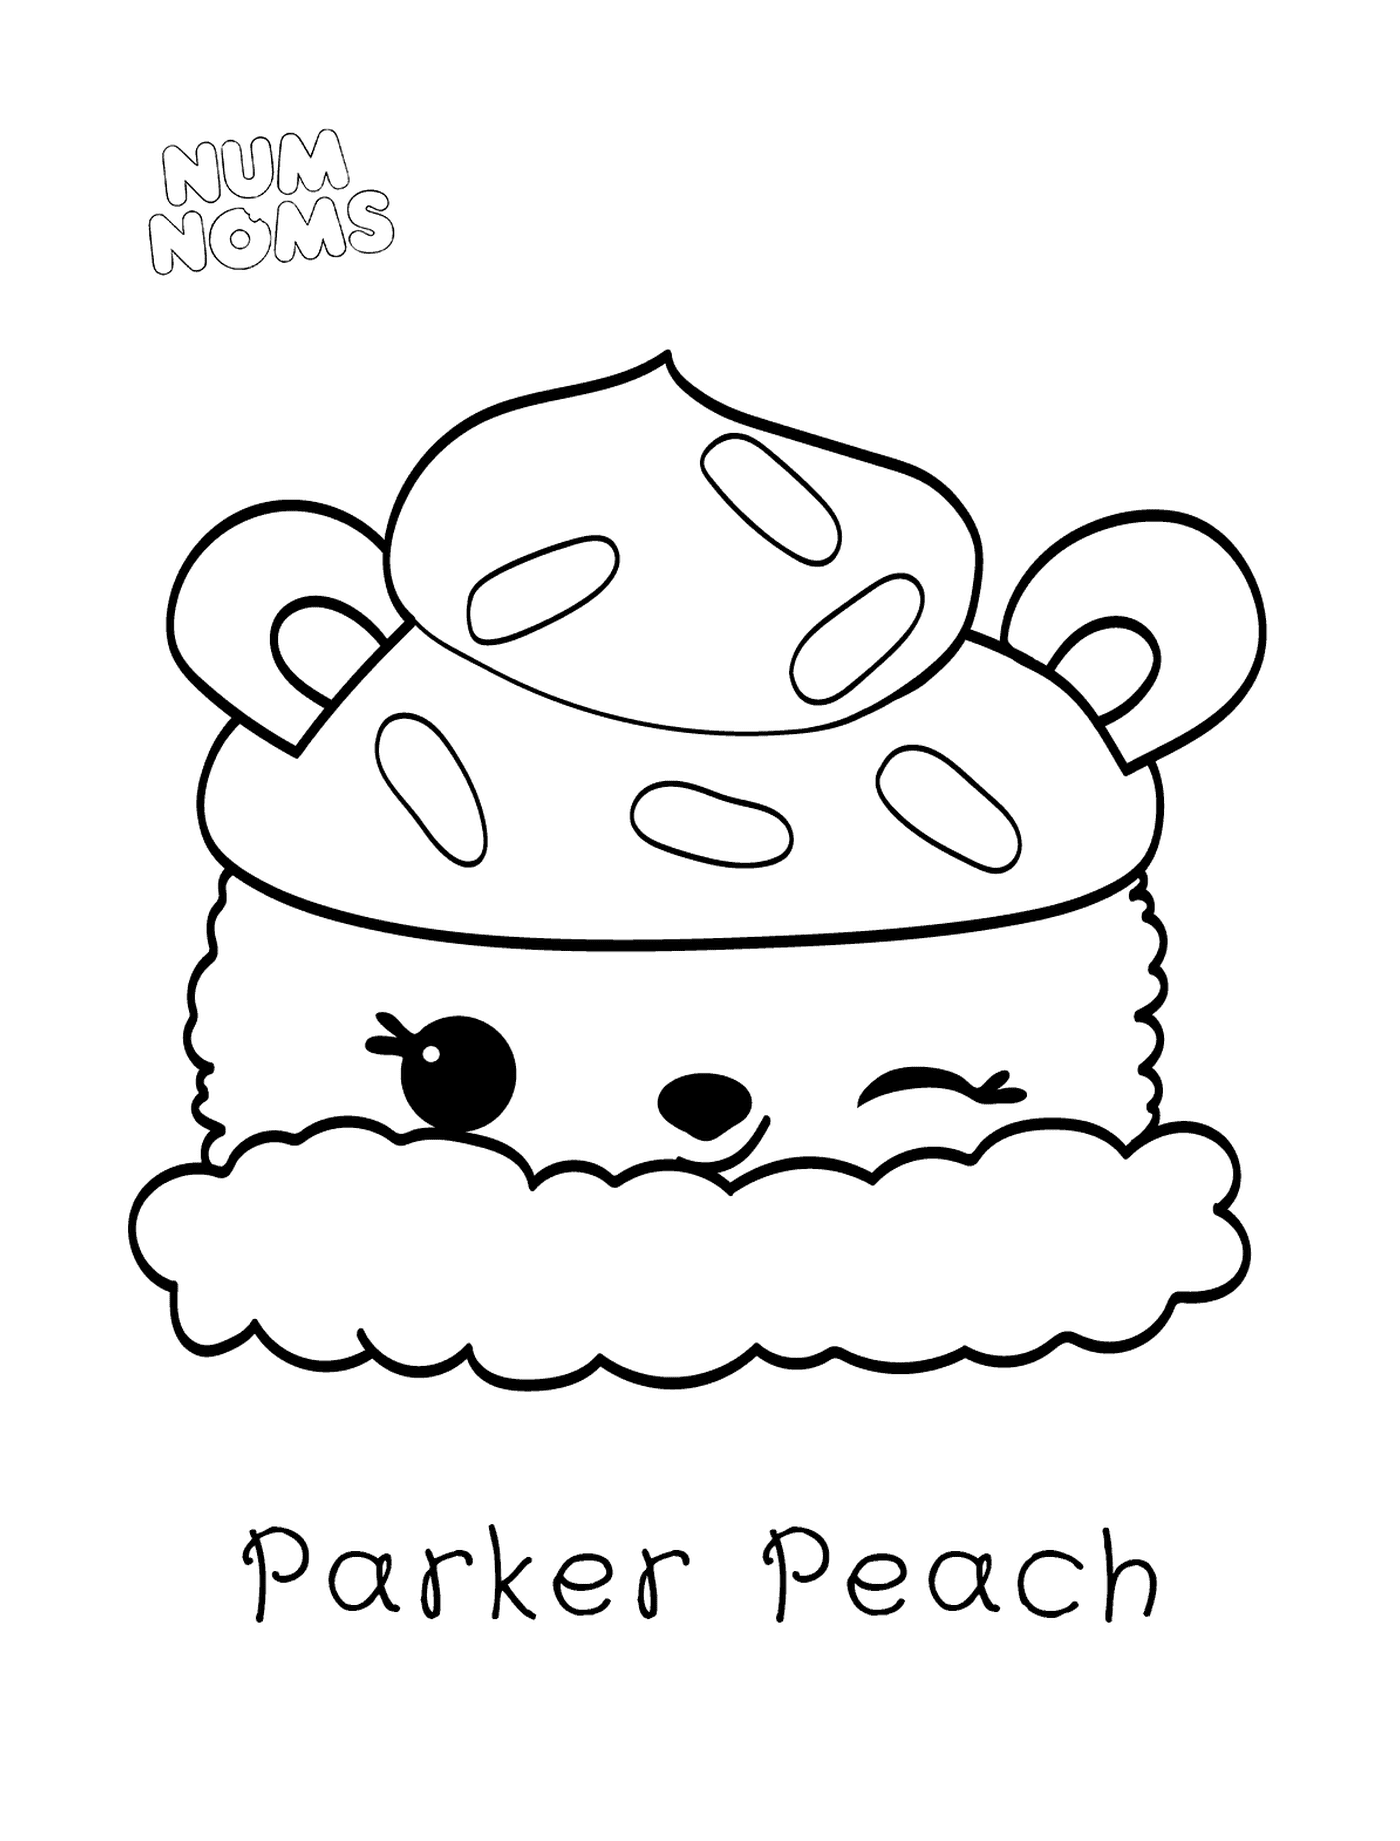  Parker Peach по названиям Num 